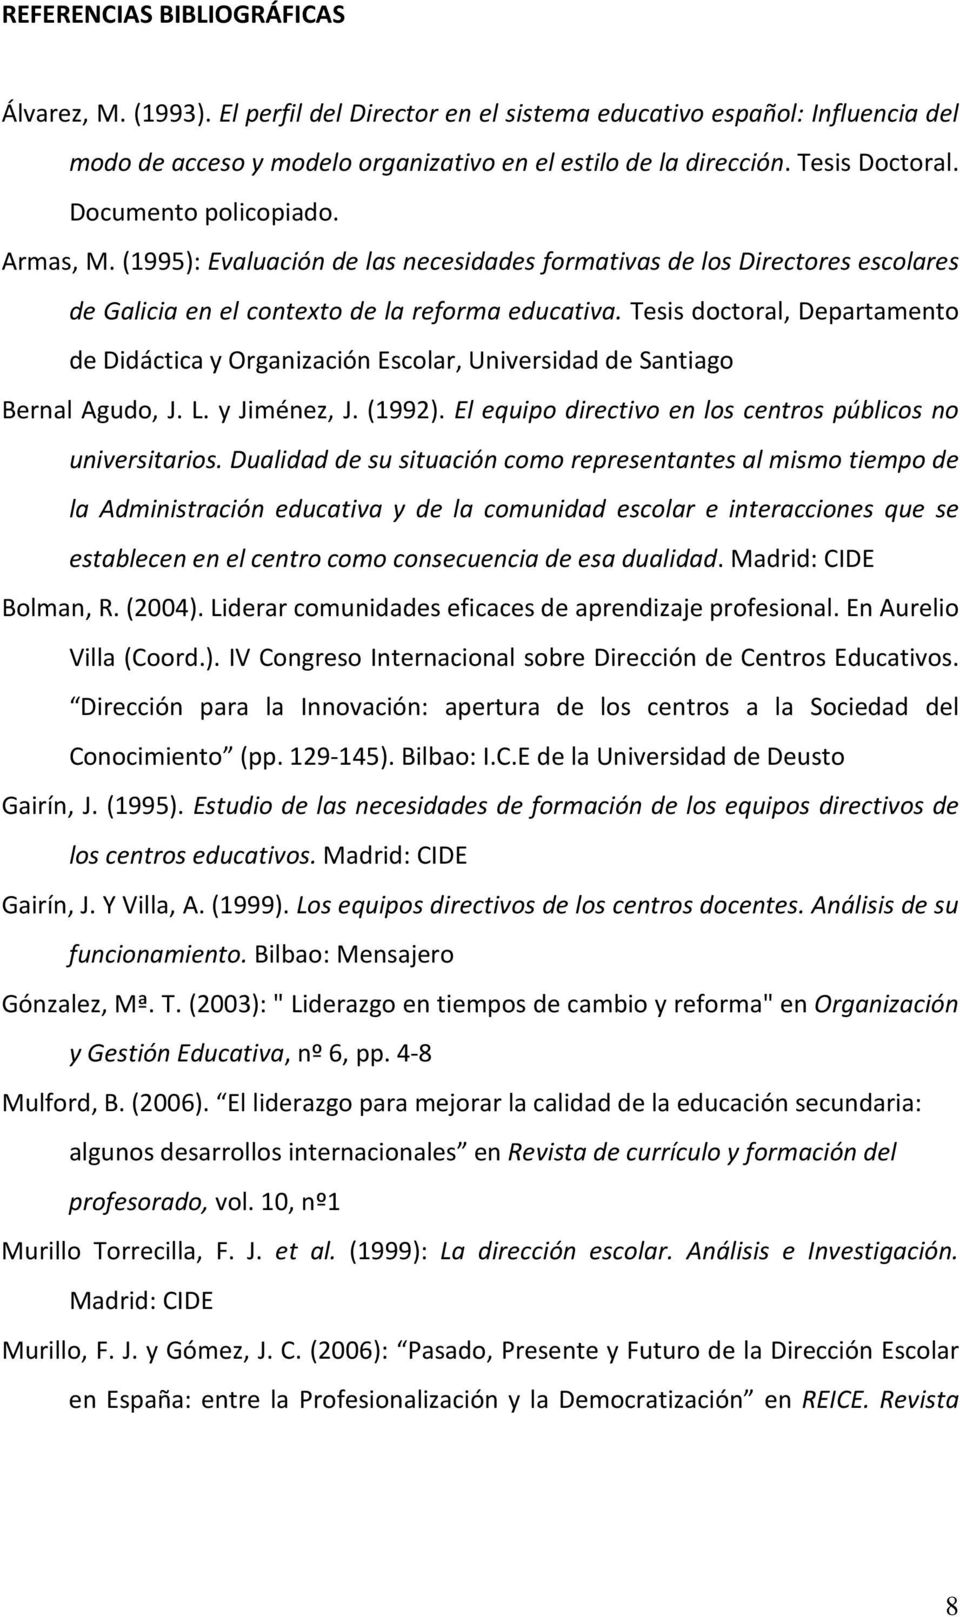 Tesis doctoral, Departamento de Didáctica y Organización Escolar, Universidad de Santiago Bernal Agudo, J. L. y Jiménez, J. (1992). El equipo directivo en los centros públicos no universitarios.